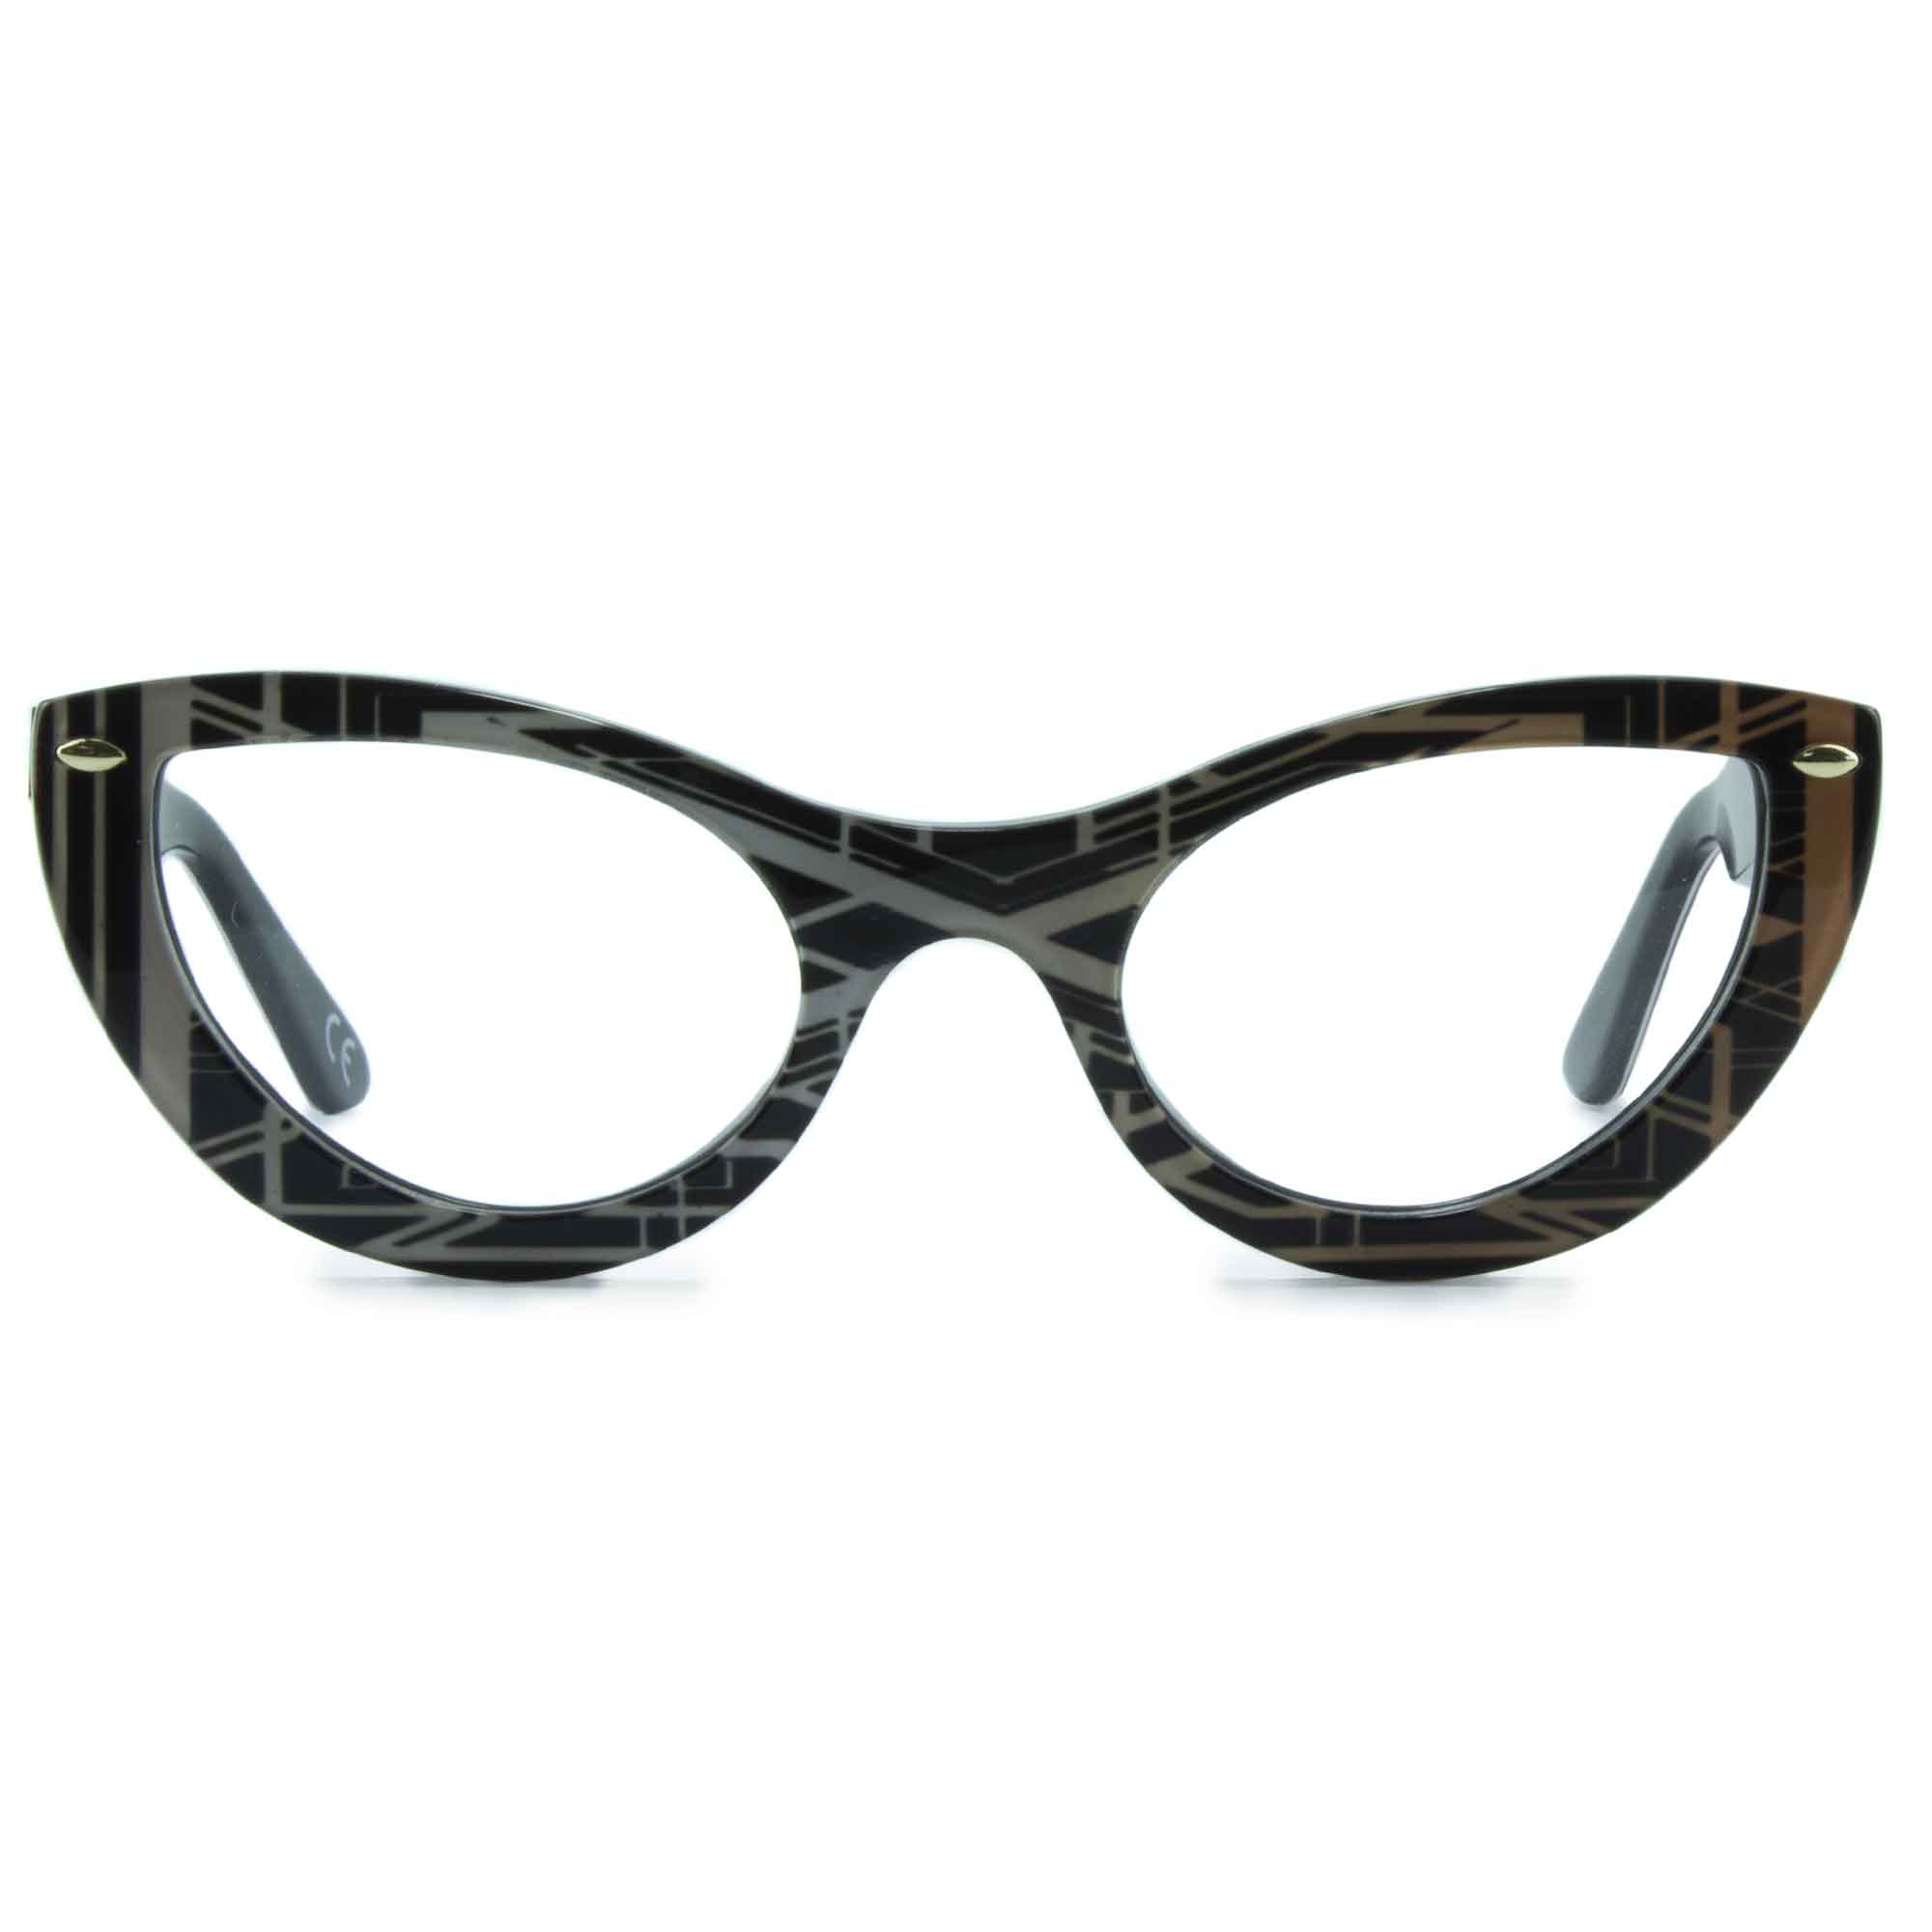 black & gold cat eye glasses